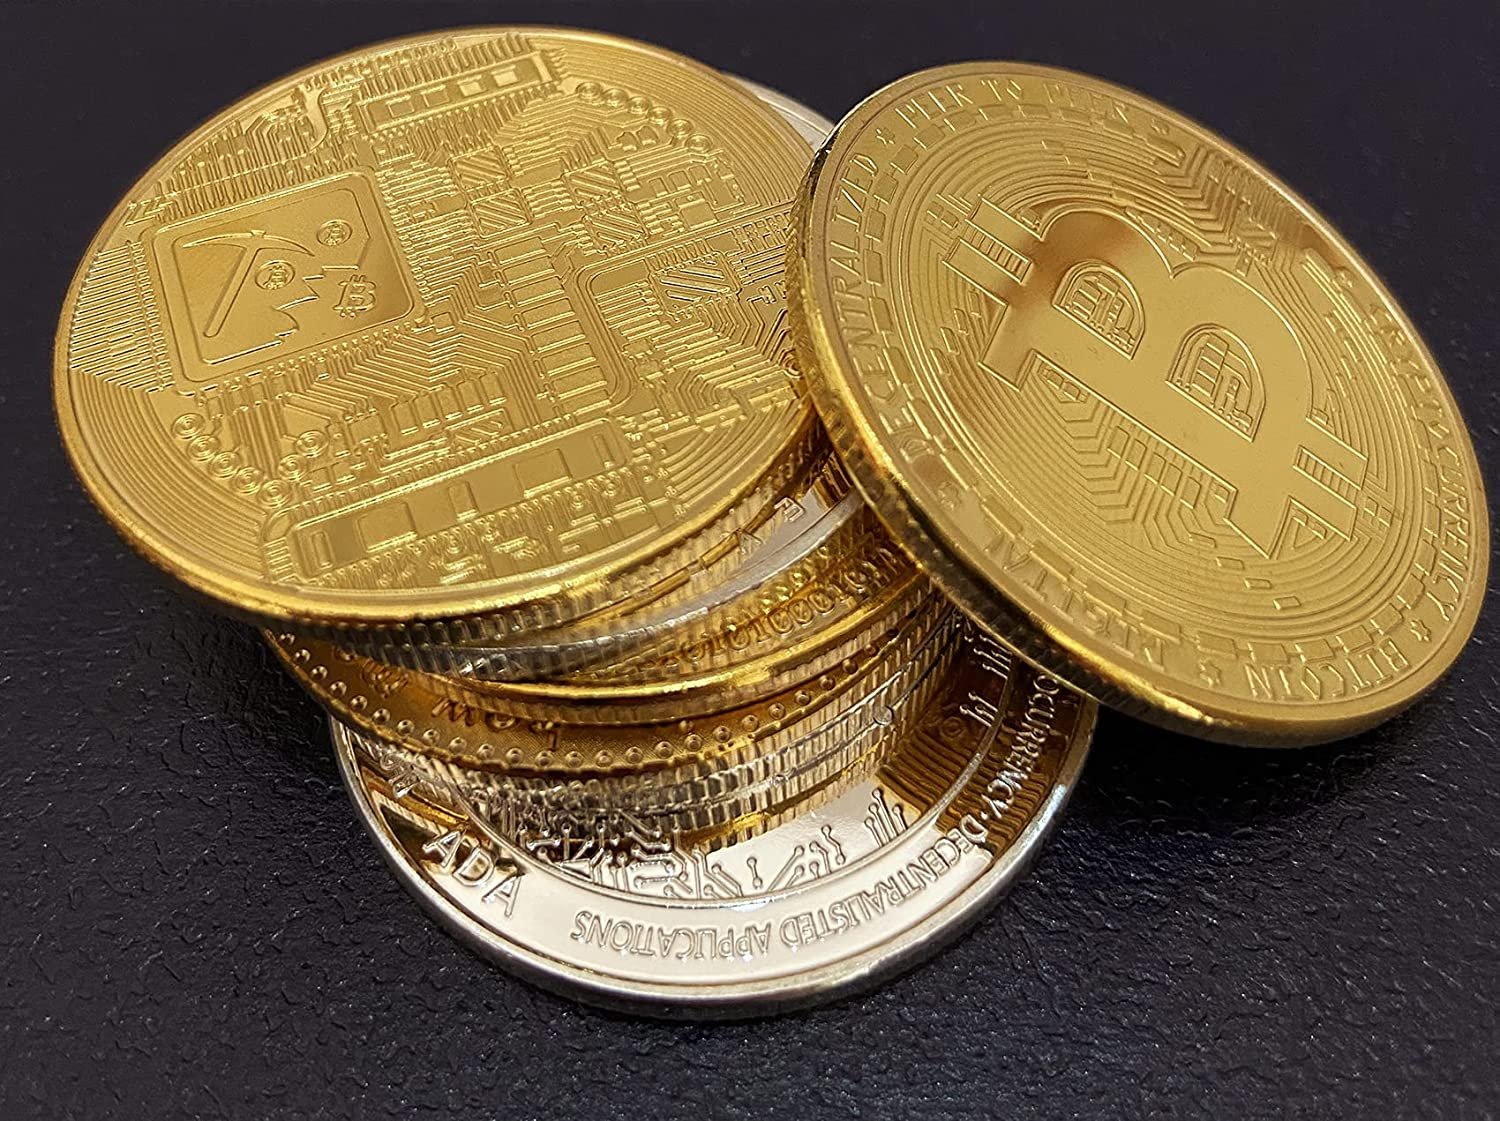 okexckk Bitcoin (BTC) Coin Ethereum (ETH) Coin in Showcase Edition Box